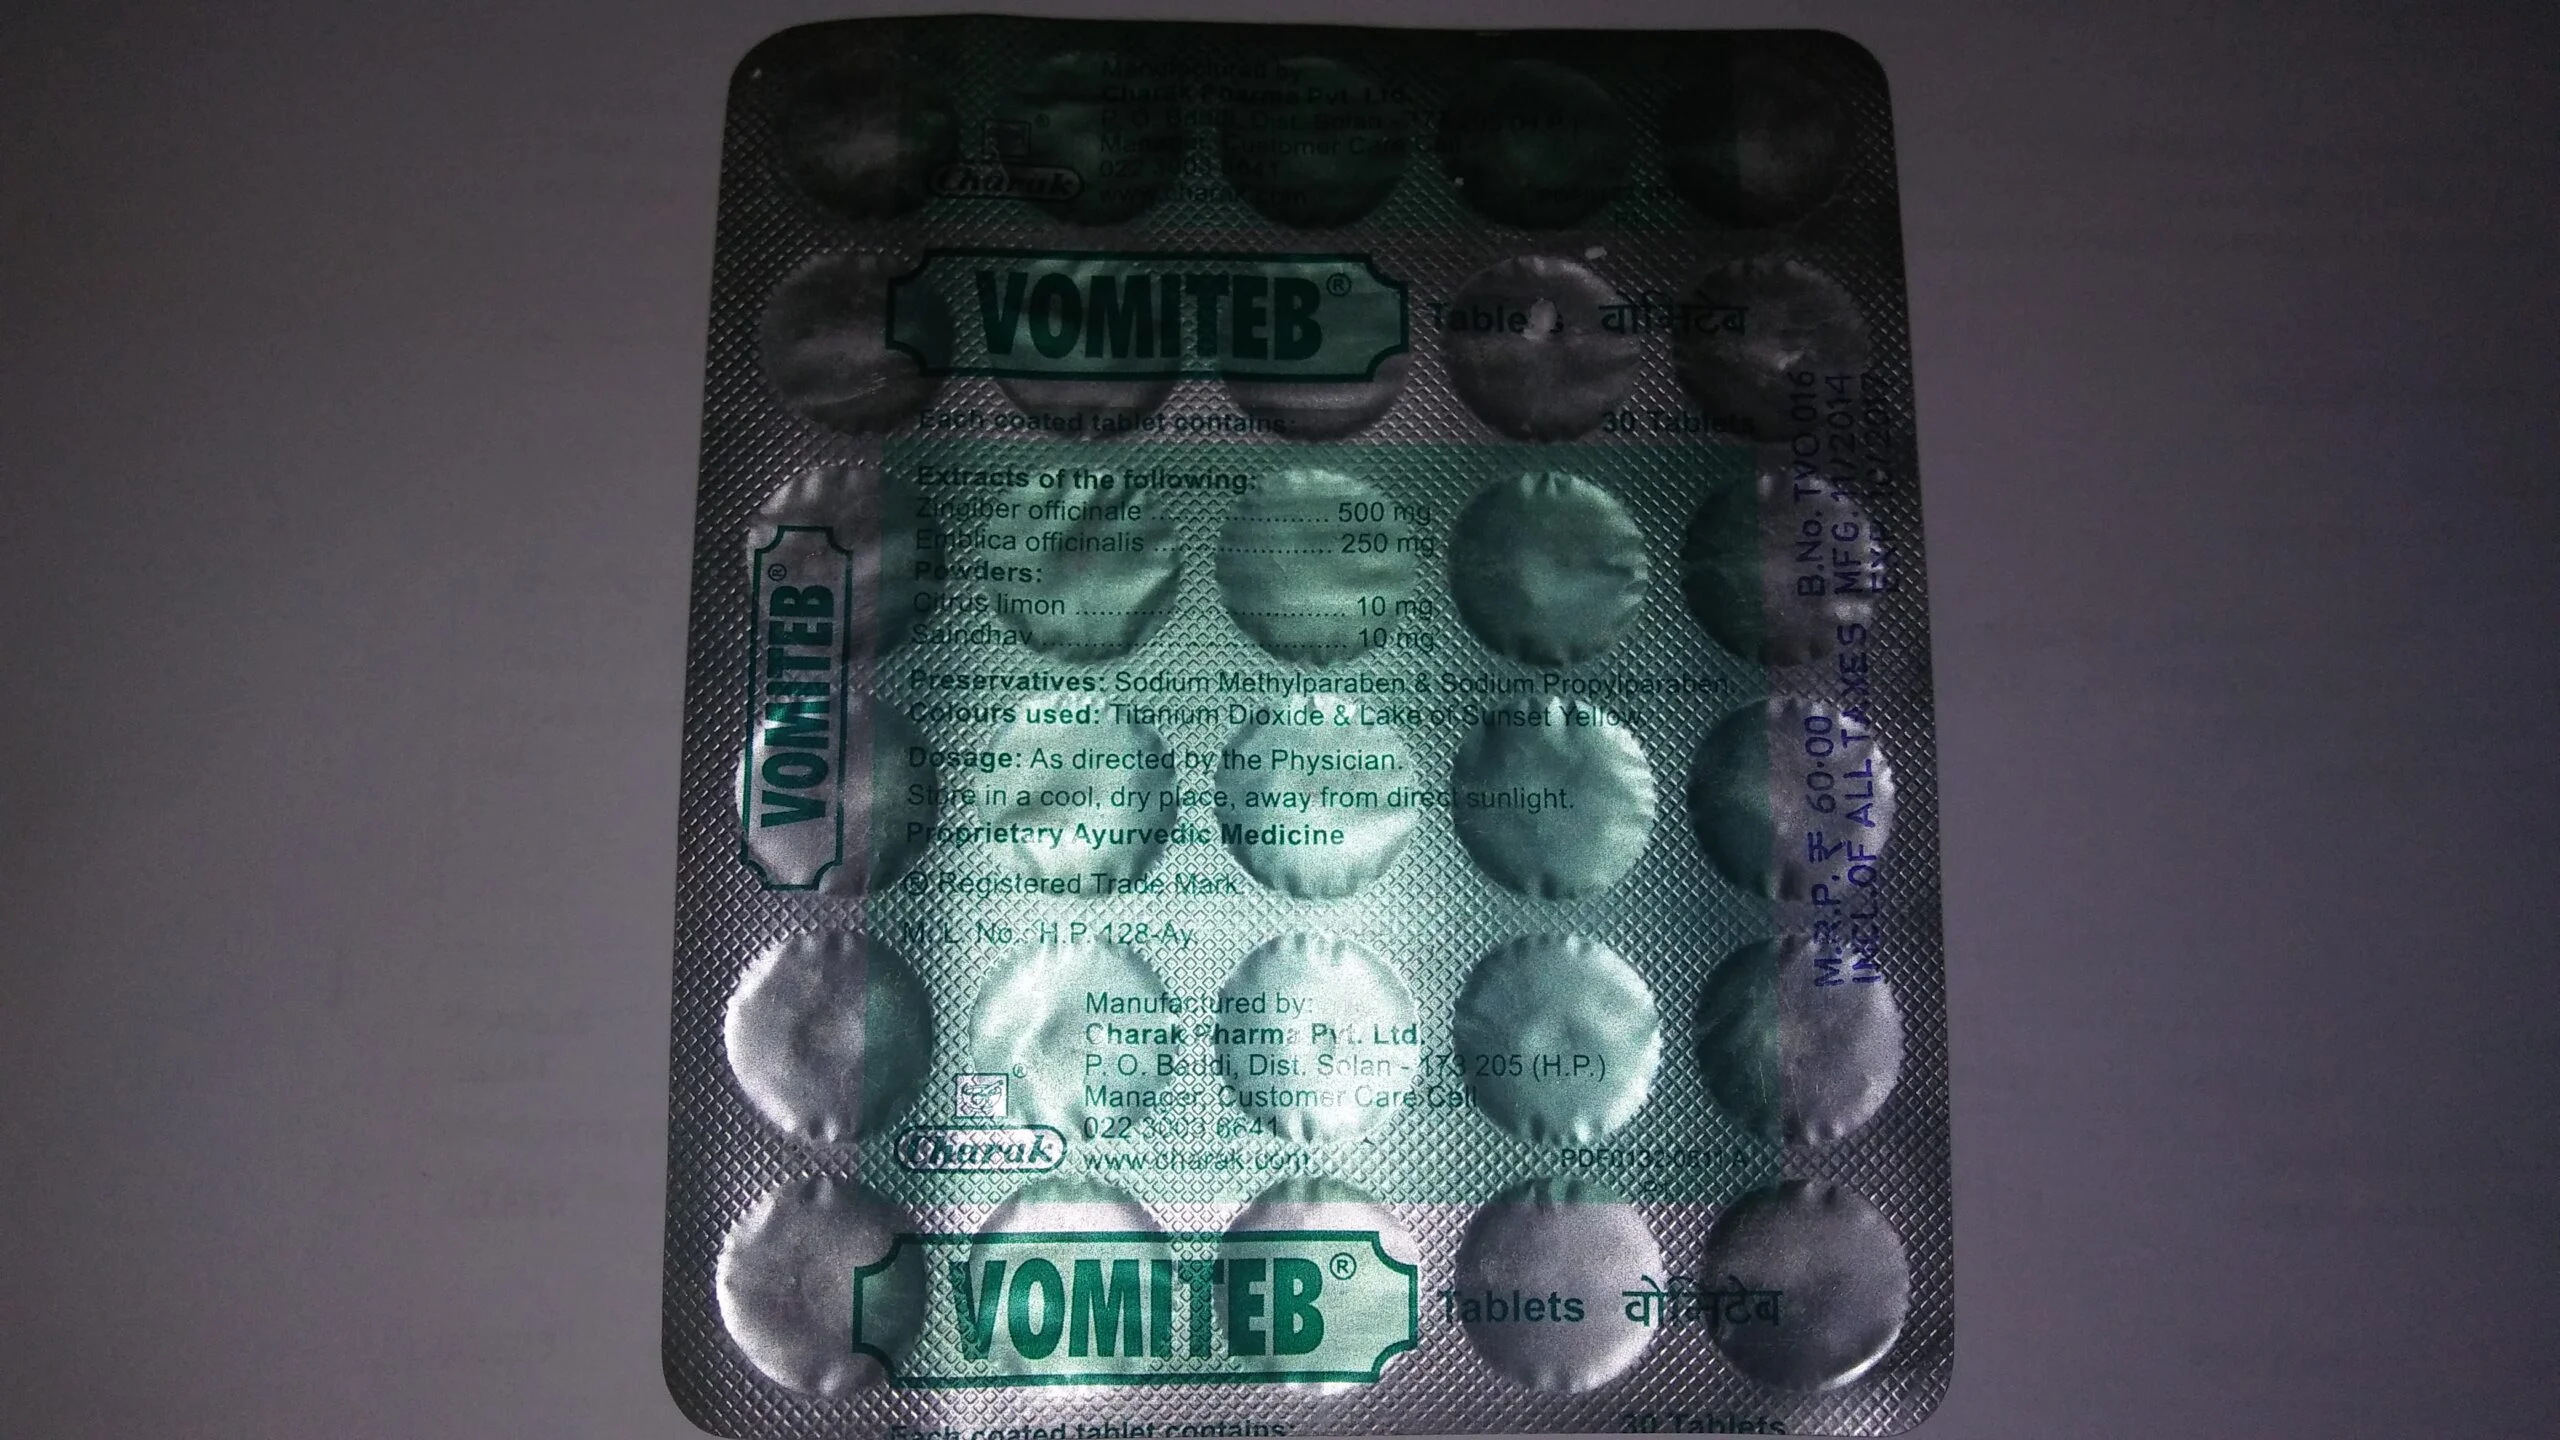 vomiteb tablet 30 tab upto 15% off charak pharma mumbai